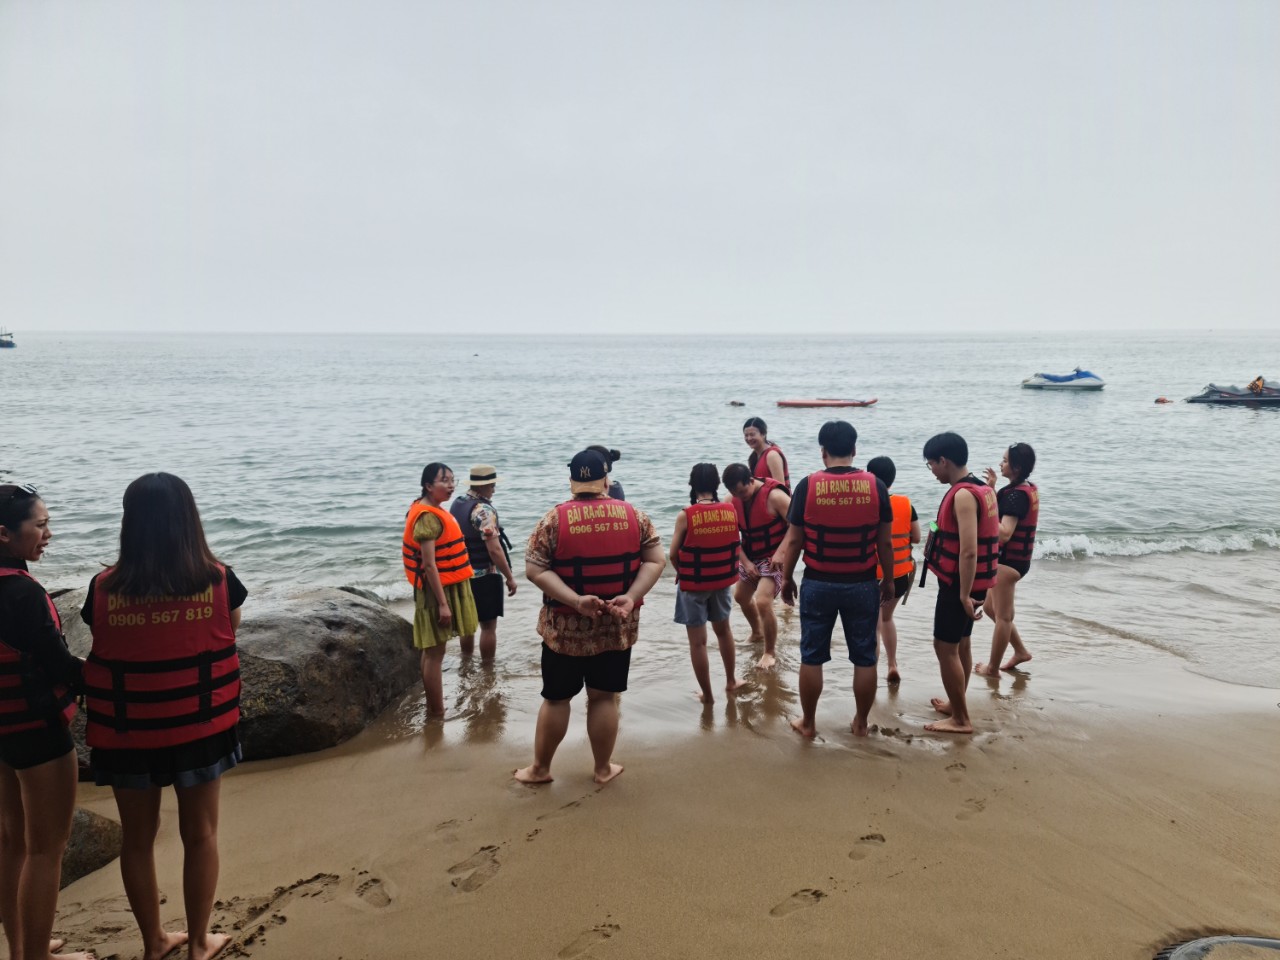 Tour lặn ngắm san hô Sơn Trà Đà Nẵng 1 ngày